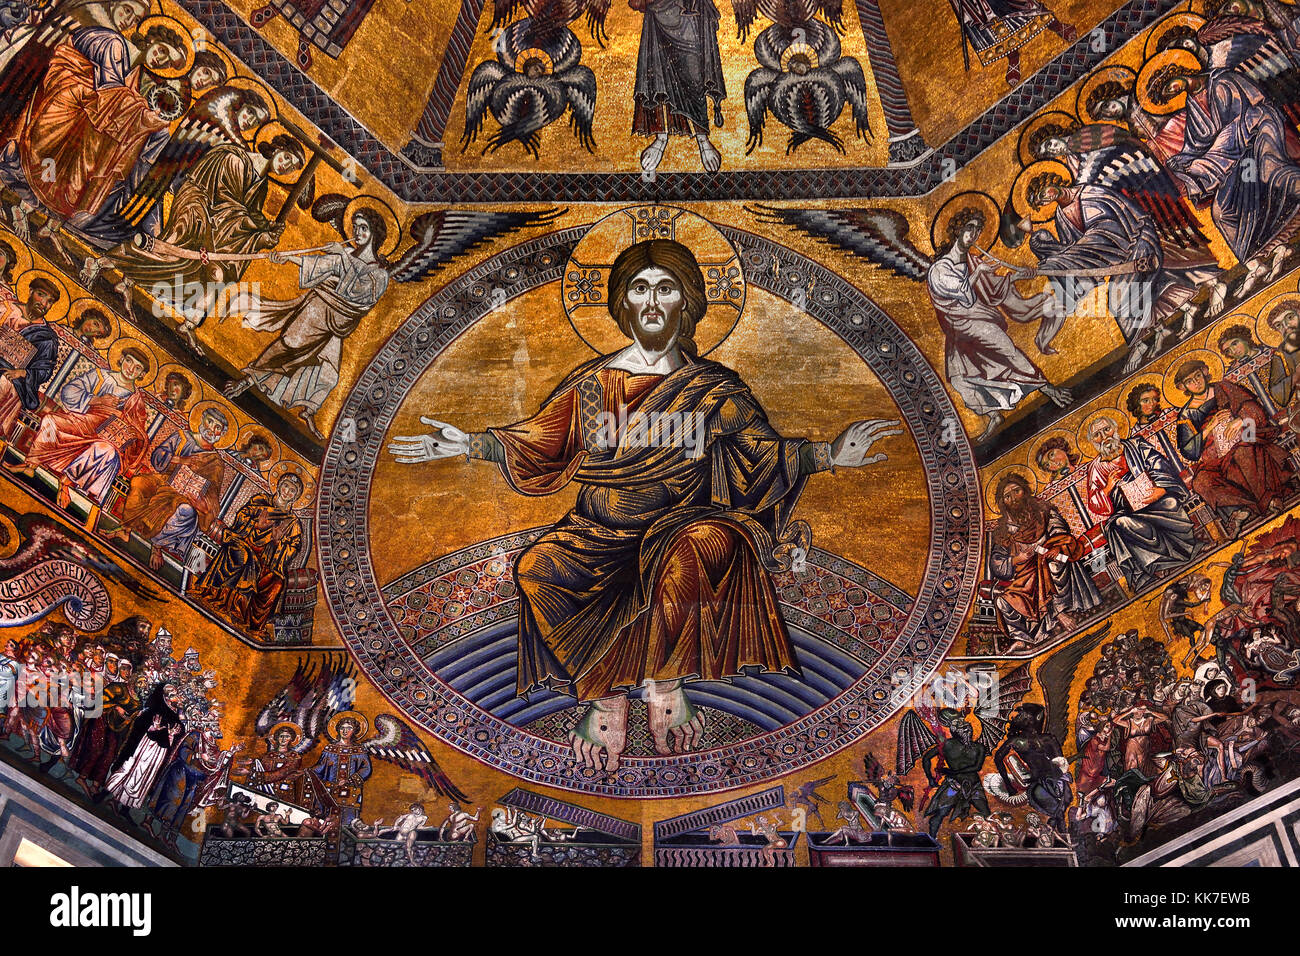 Cristo y el juicio final en el Mosaico-cubierta interior de la cúpula  octogonal del Baptisterio de Florencia (: Battistero di San Giovanni),  también conocido como el Baptisterio de San Juan, es un